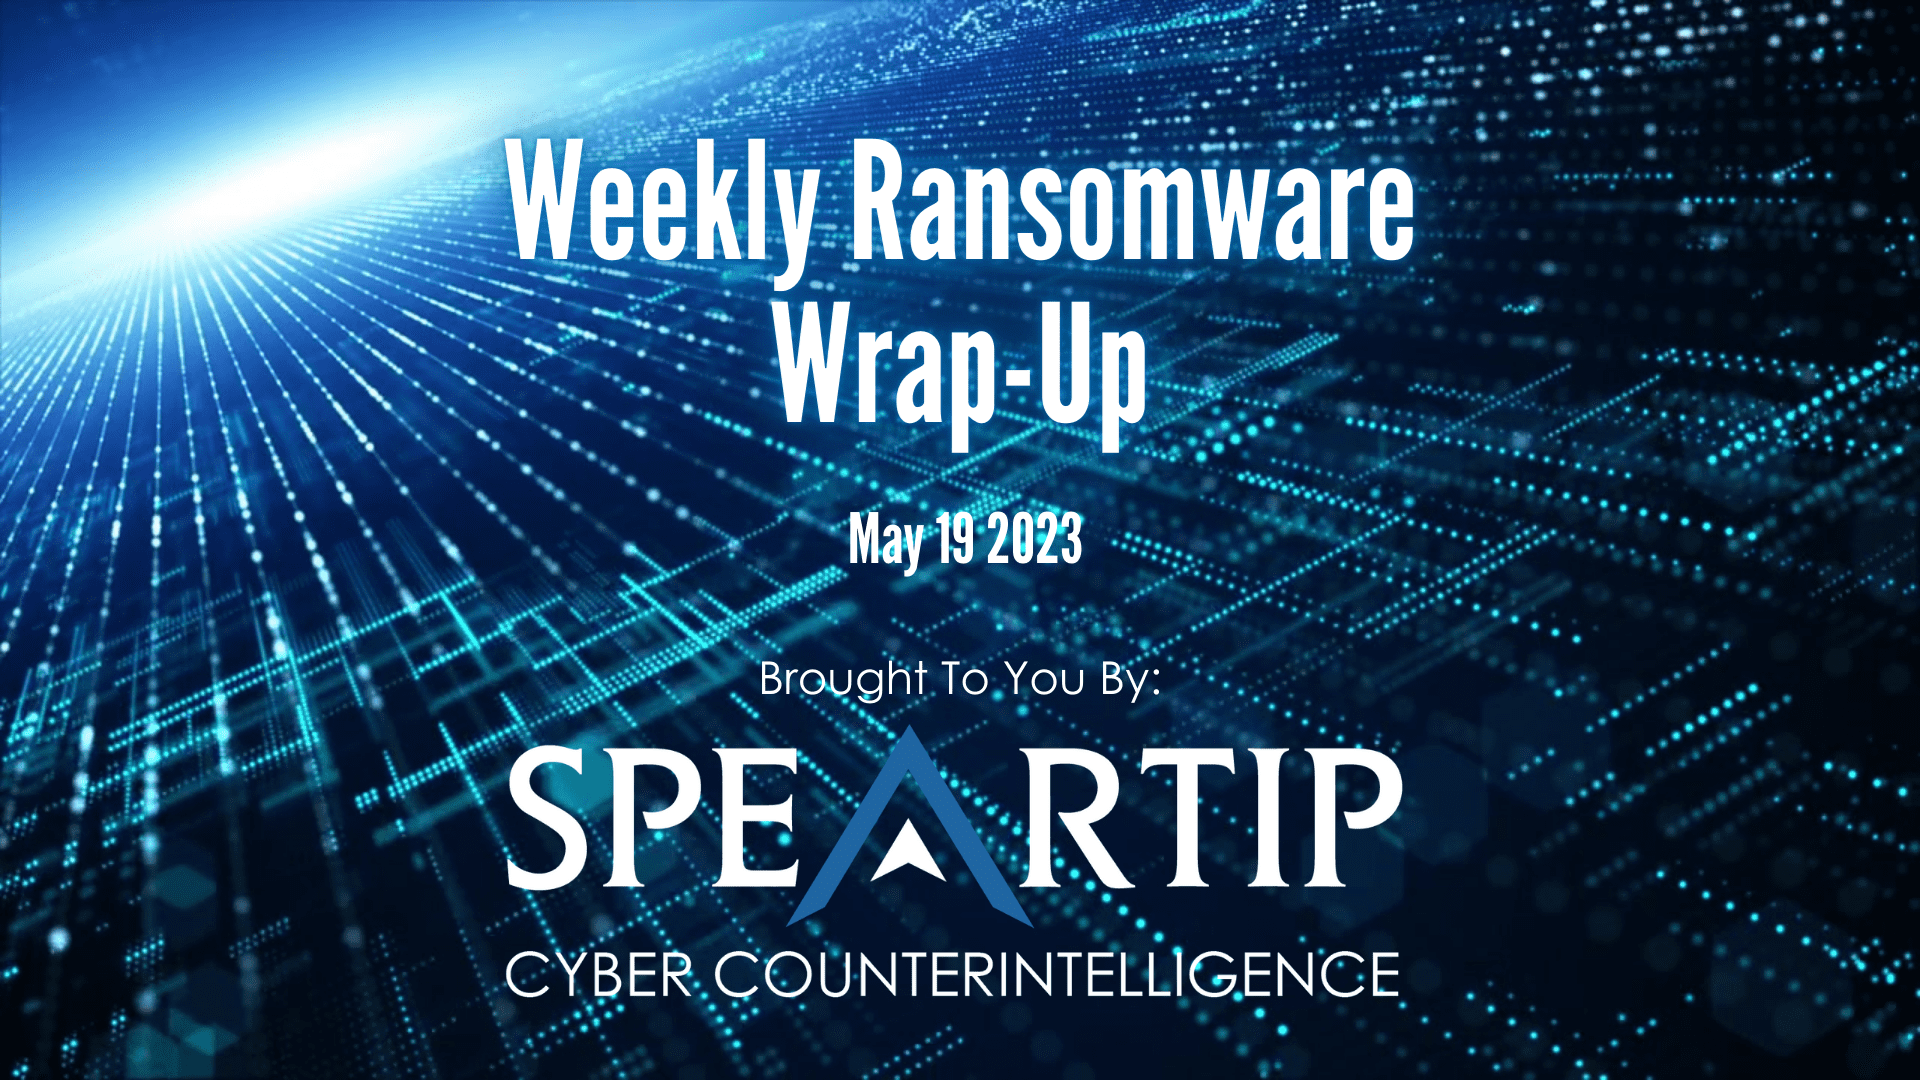 May 19, 2023 Ransomware Wrap-Up